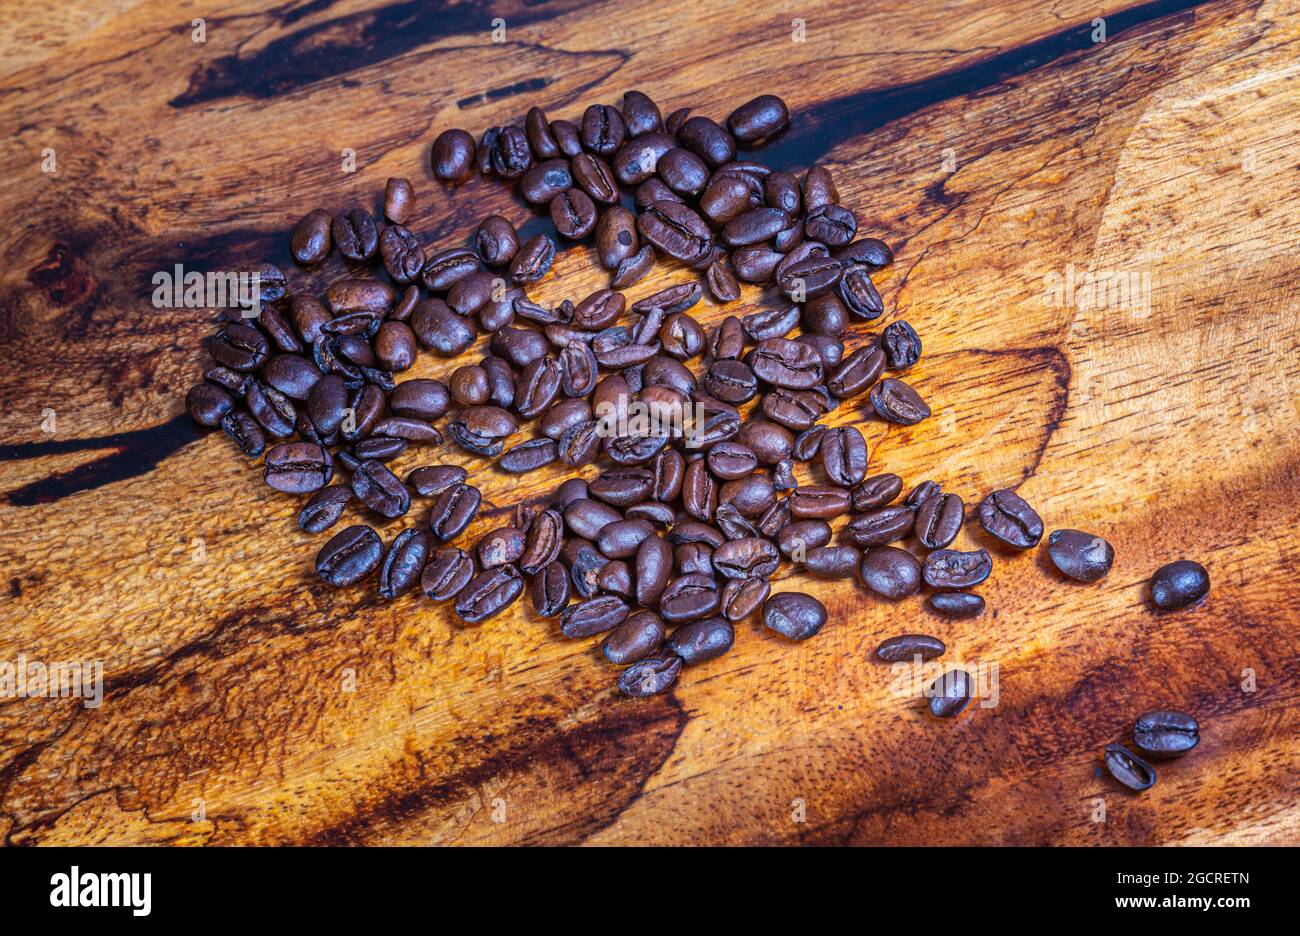 Macro fotografia vista dall'alto di un mucchio di chicchi di caffè appena tostati su sfondo di legno. Primo piano dettagliato ad alta risoluzione di chicchi di caffè tostati marroni Foto Stock